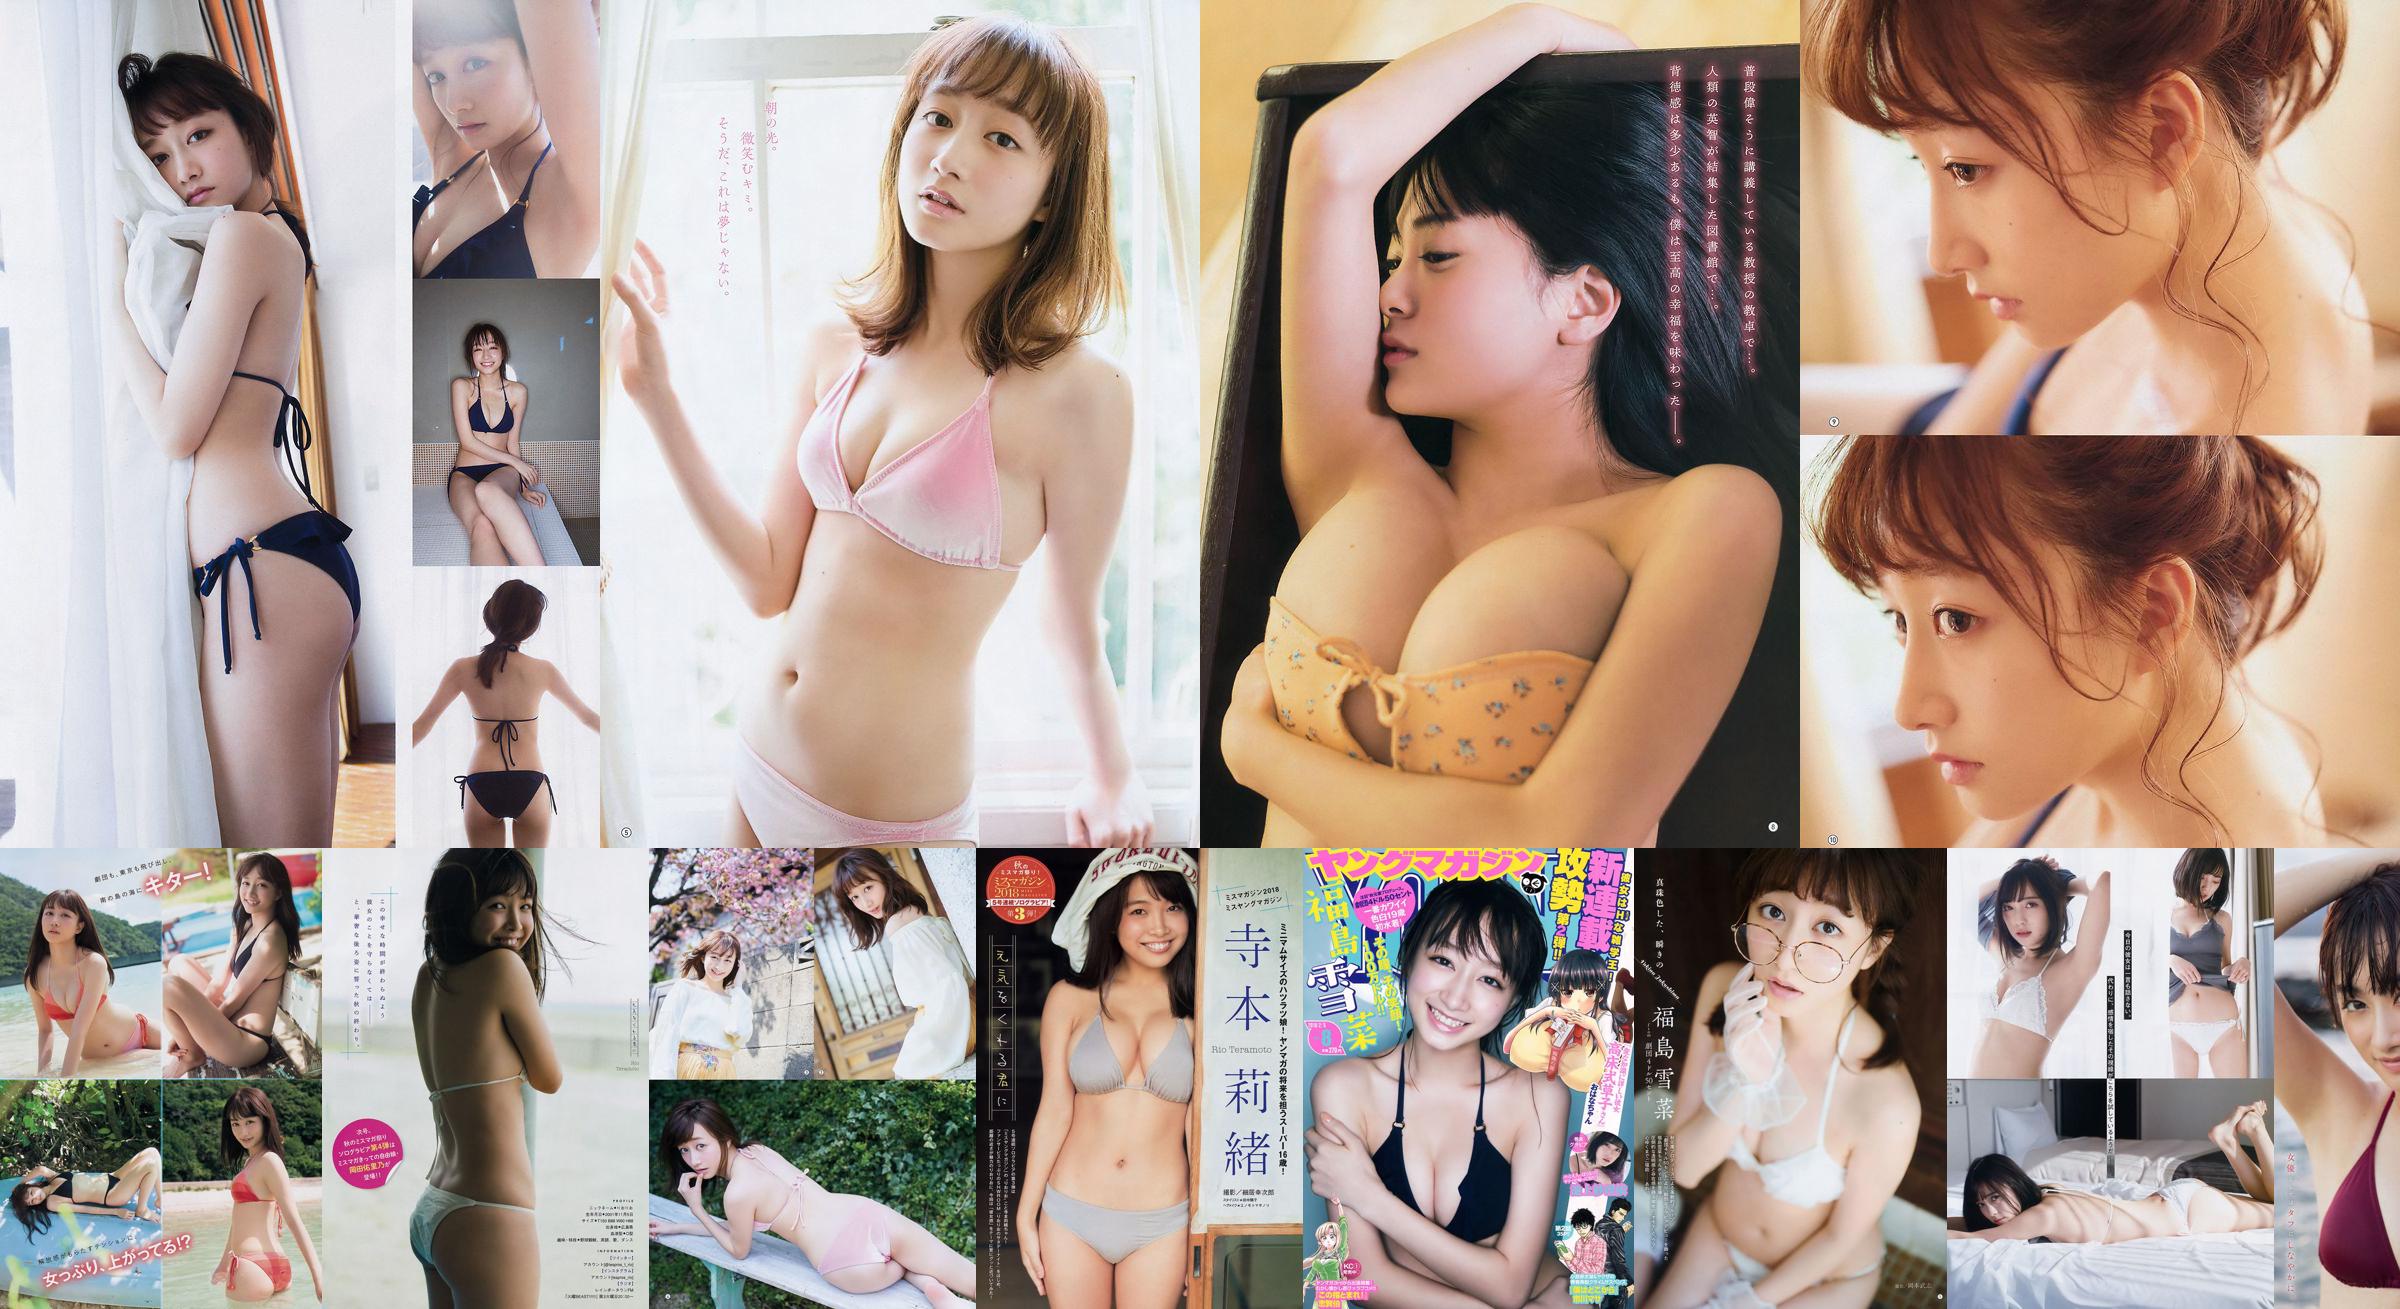 [Young Magazine] 福島雪菜 寺本莉緒 2018年No.50 写真杂志 No.152f2a ページ1